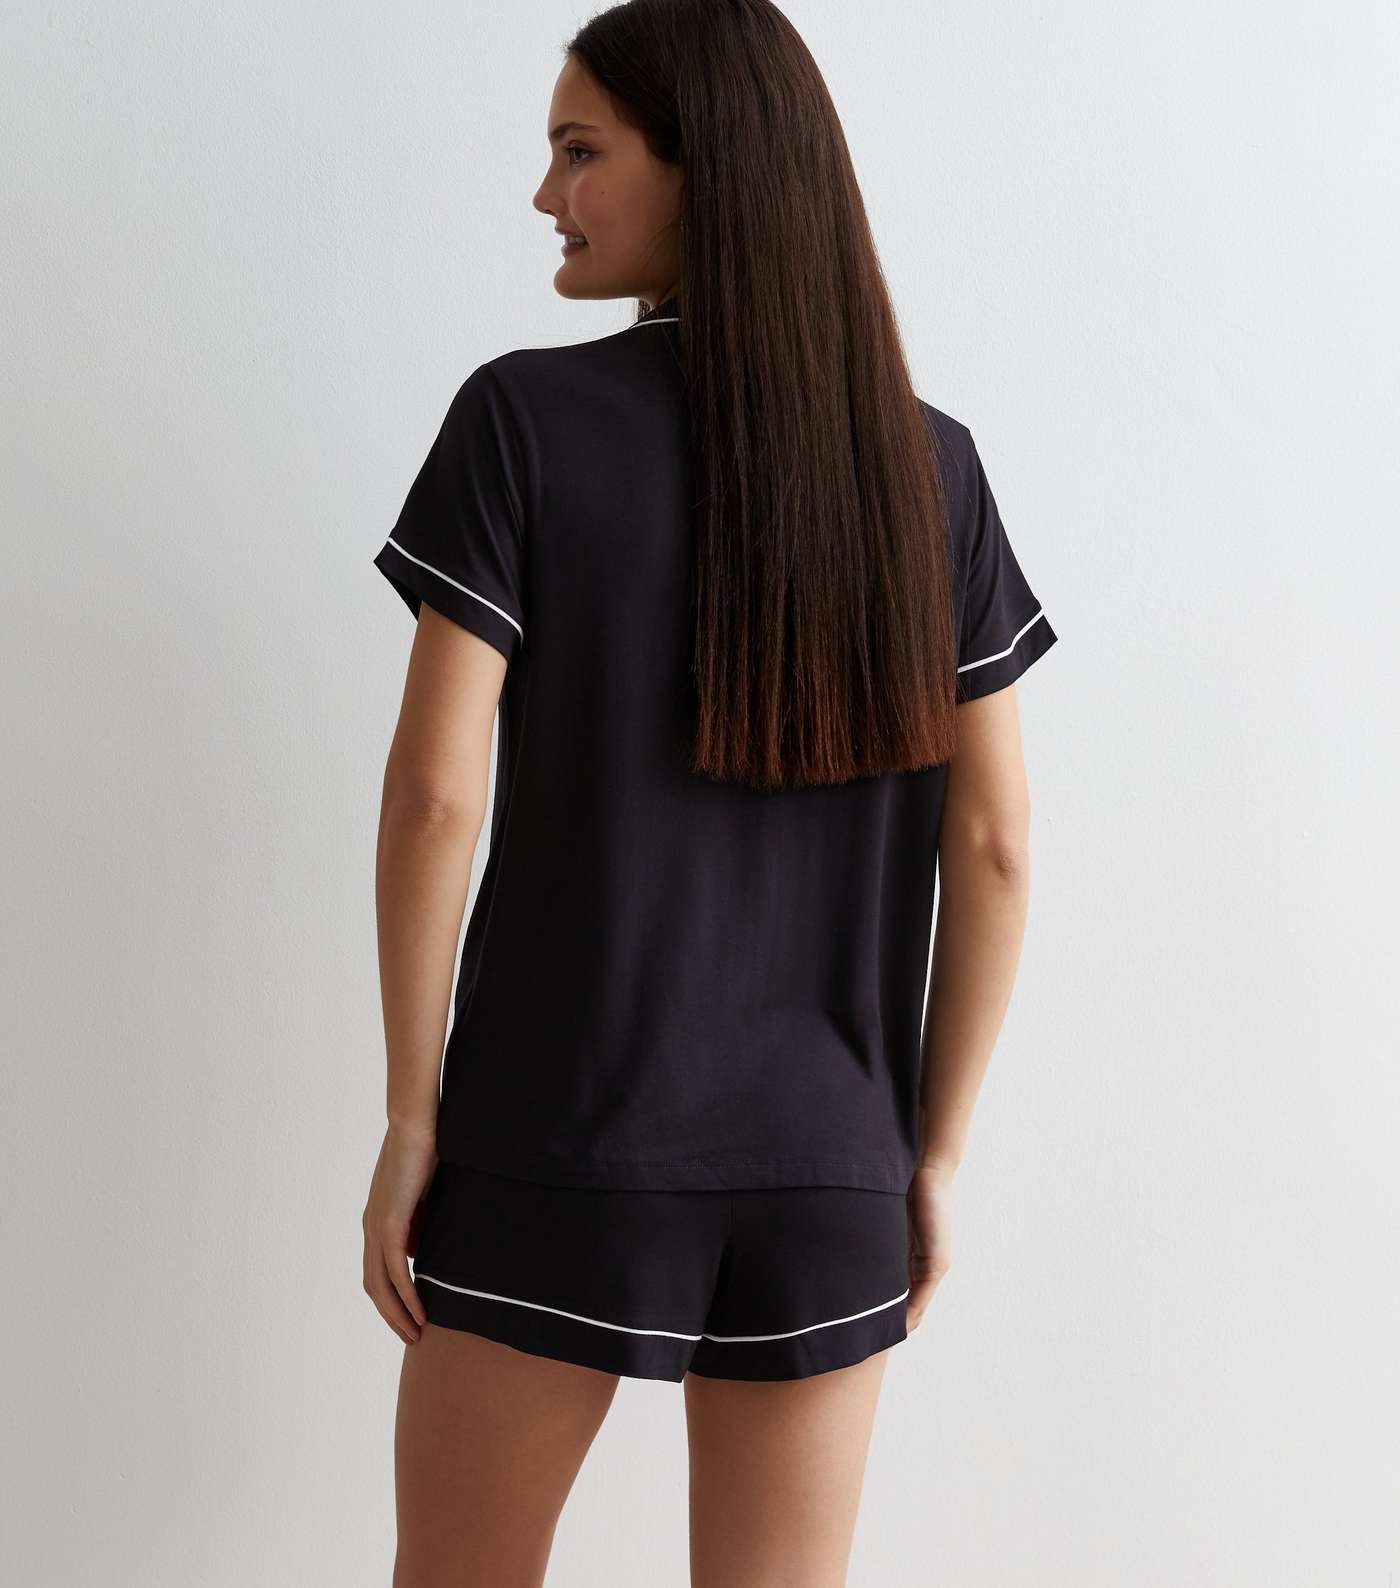 Black Short Pyjamas with Piping Trim Image 4